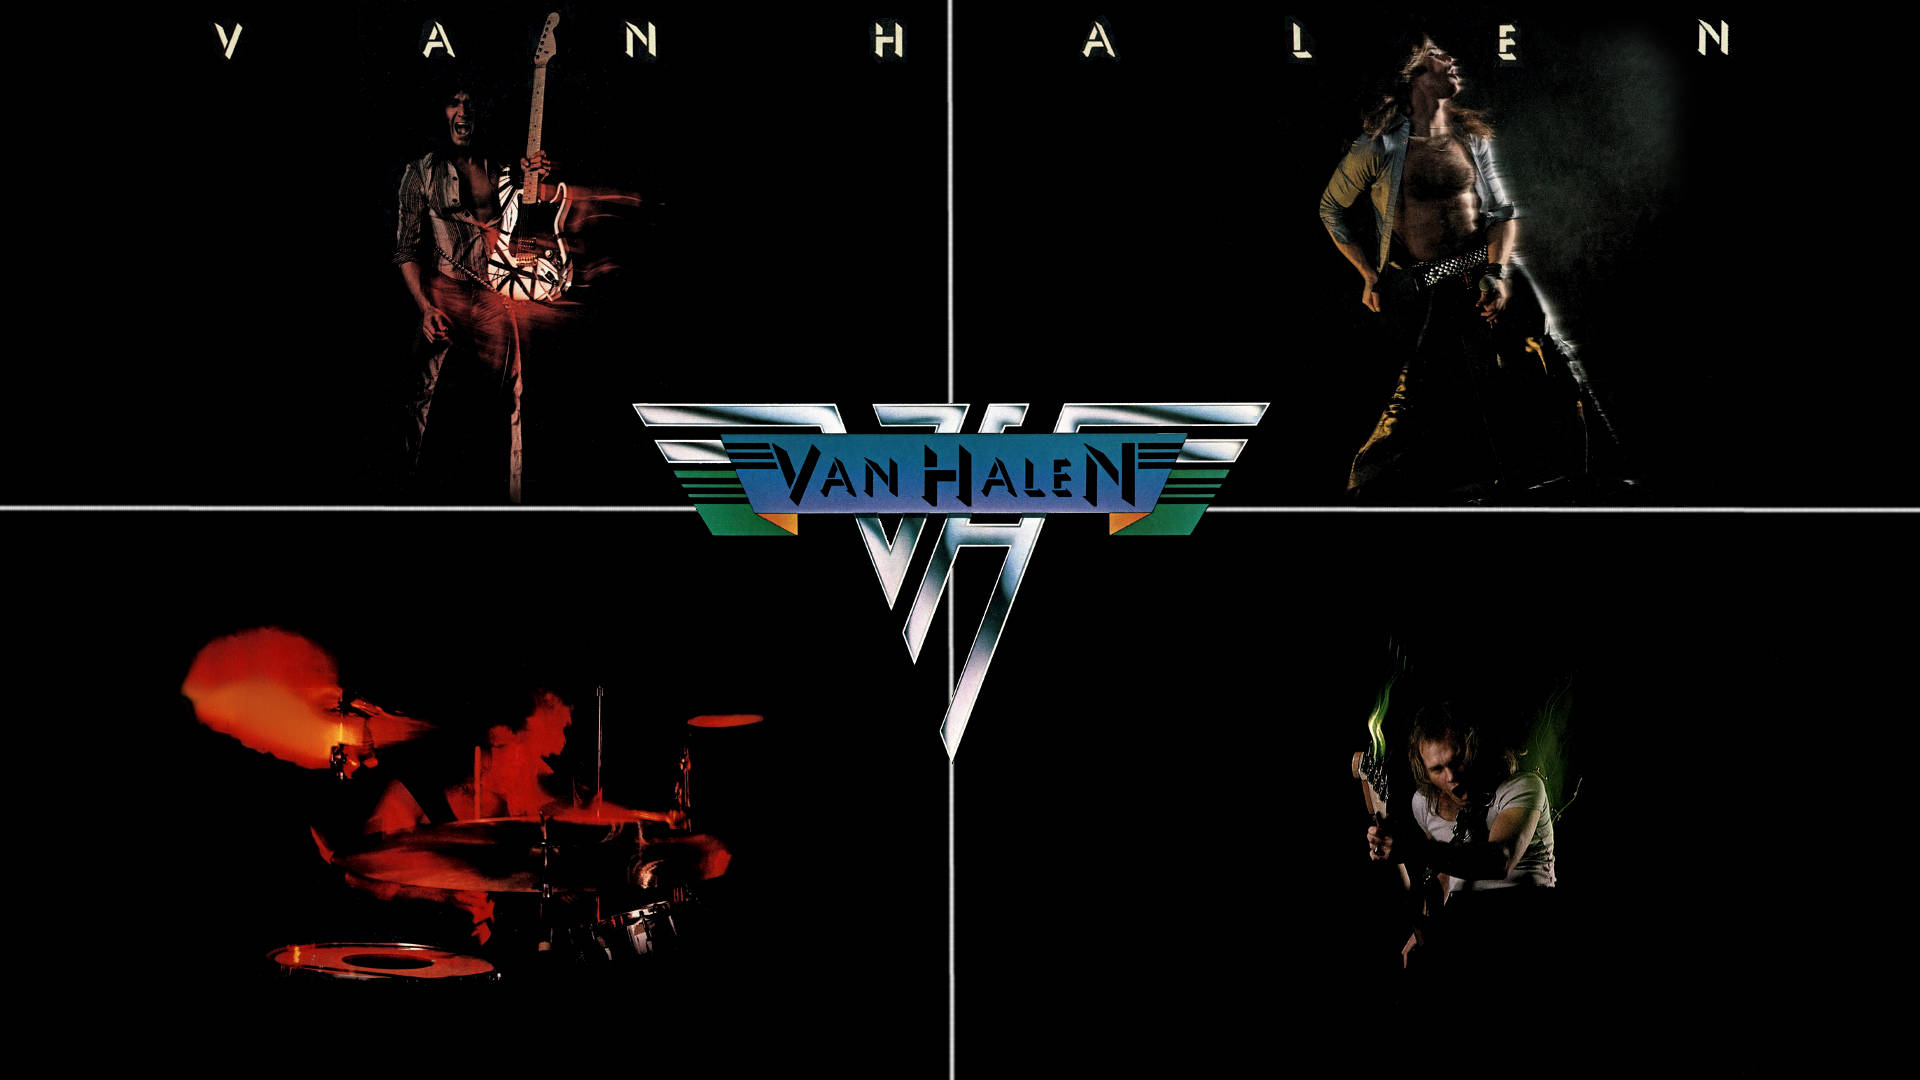 Eddie Van Halen Band Collage Background